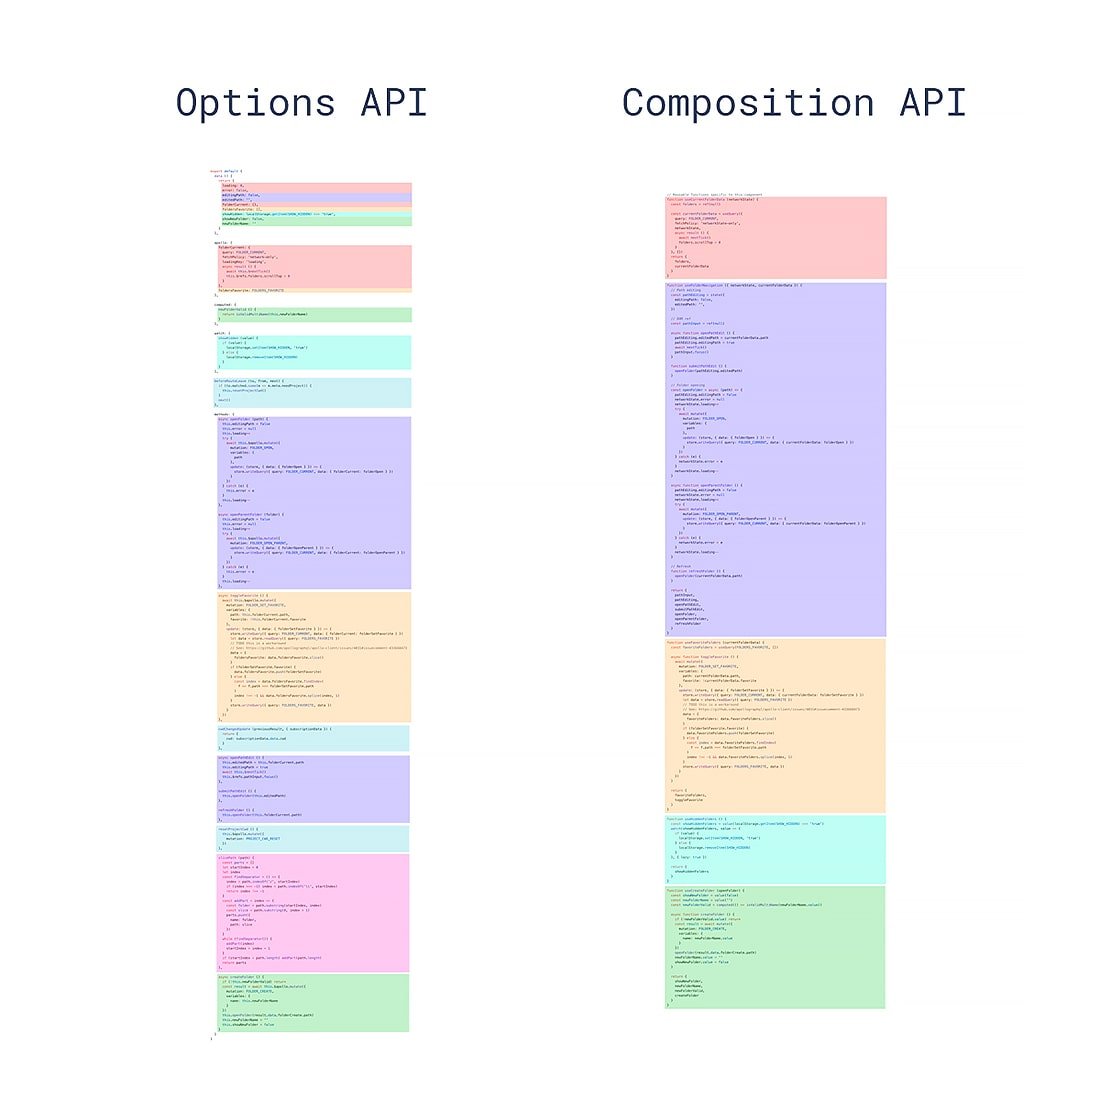 Vue Composition API vs Options API